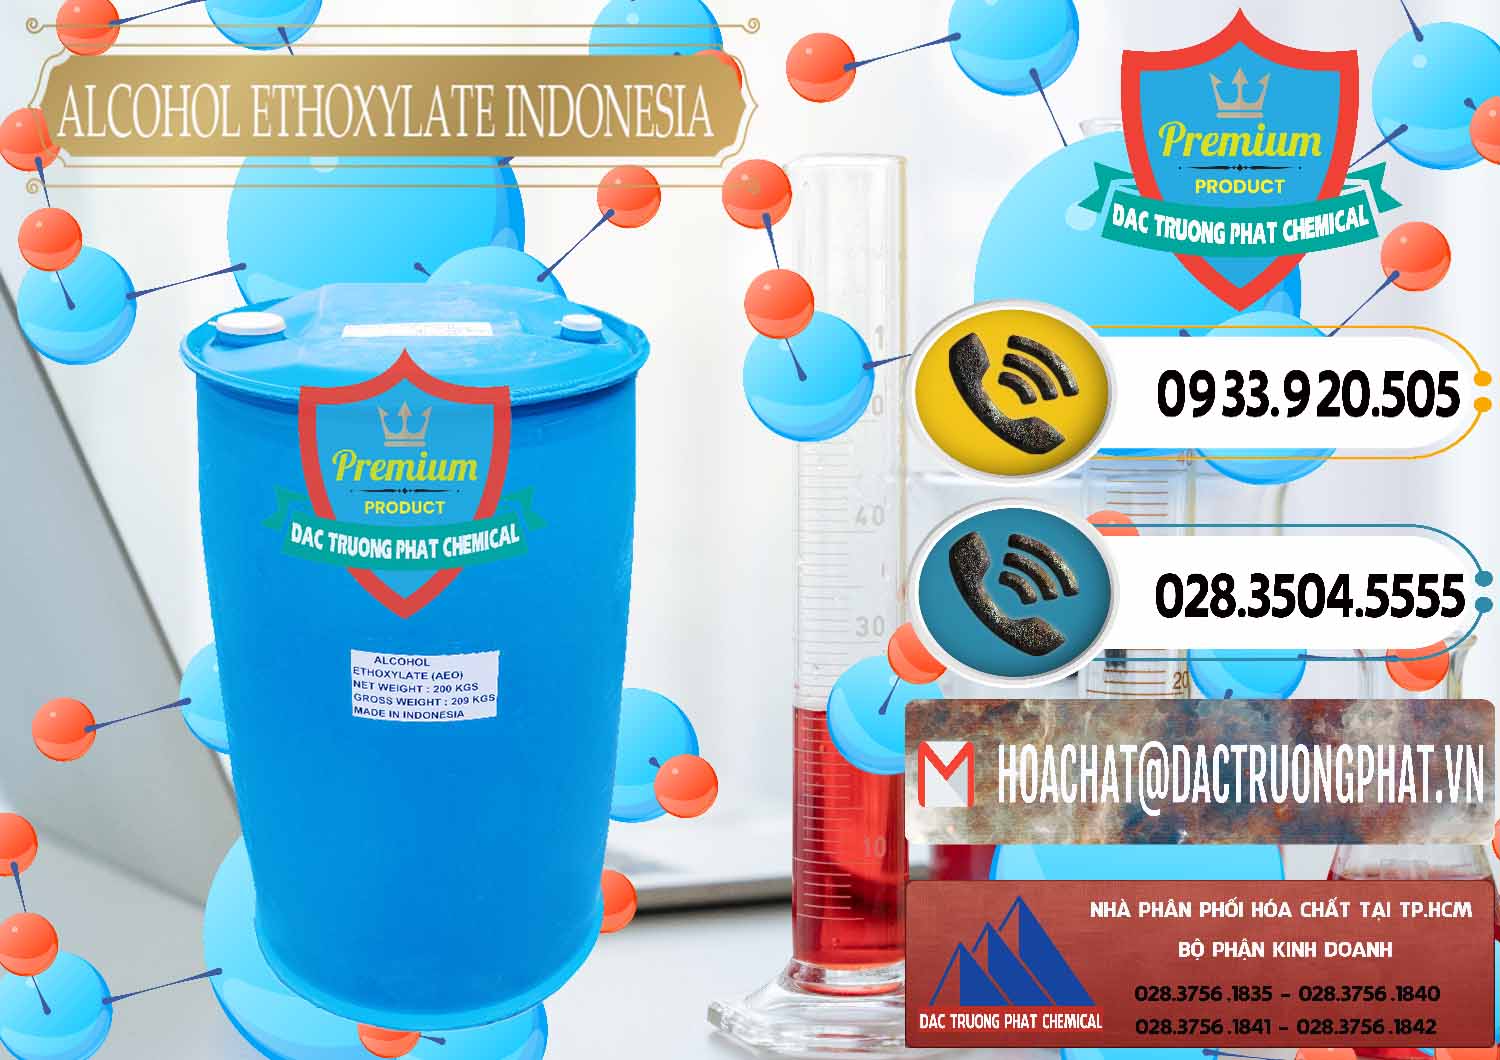 Cty phân phối ( bán ) Alcohol Ethoxylate Indonesia - 0308 - Nơi cung cấp và phân phối hóa chất tại TP.HCM - hoachatdetnhuom.vn